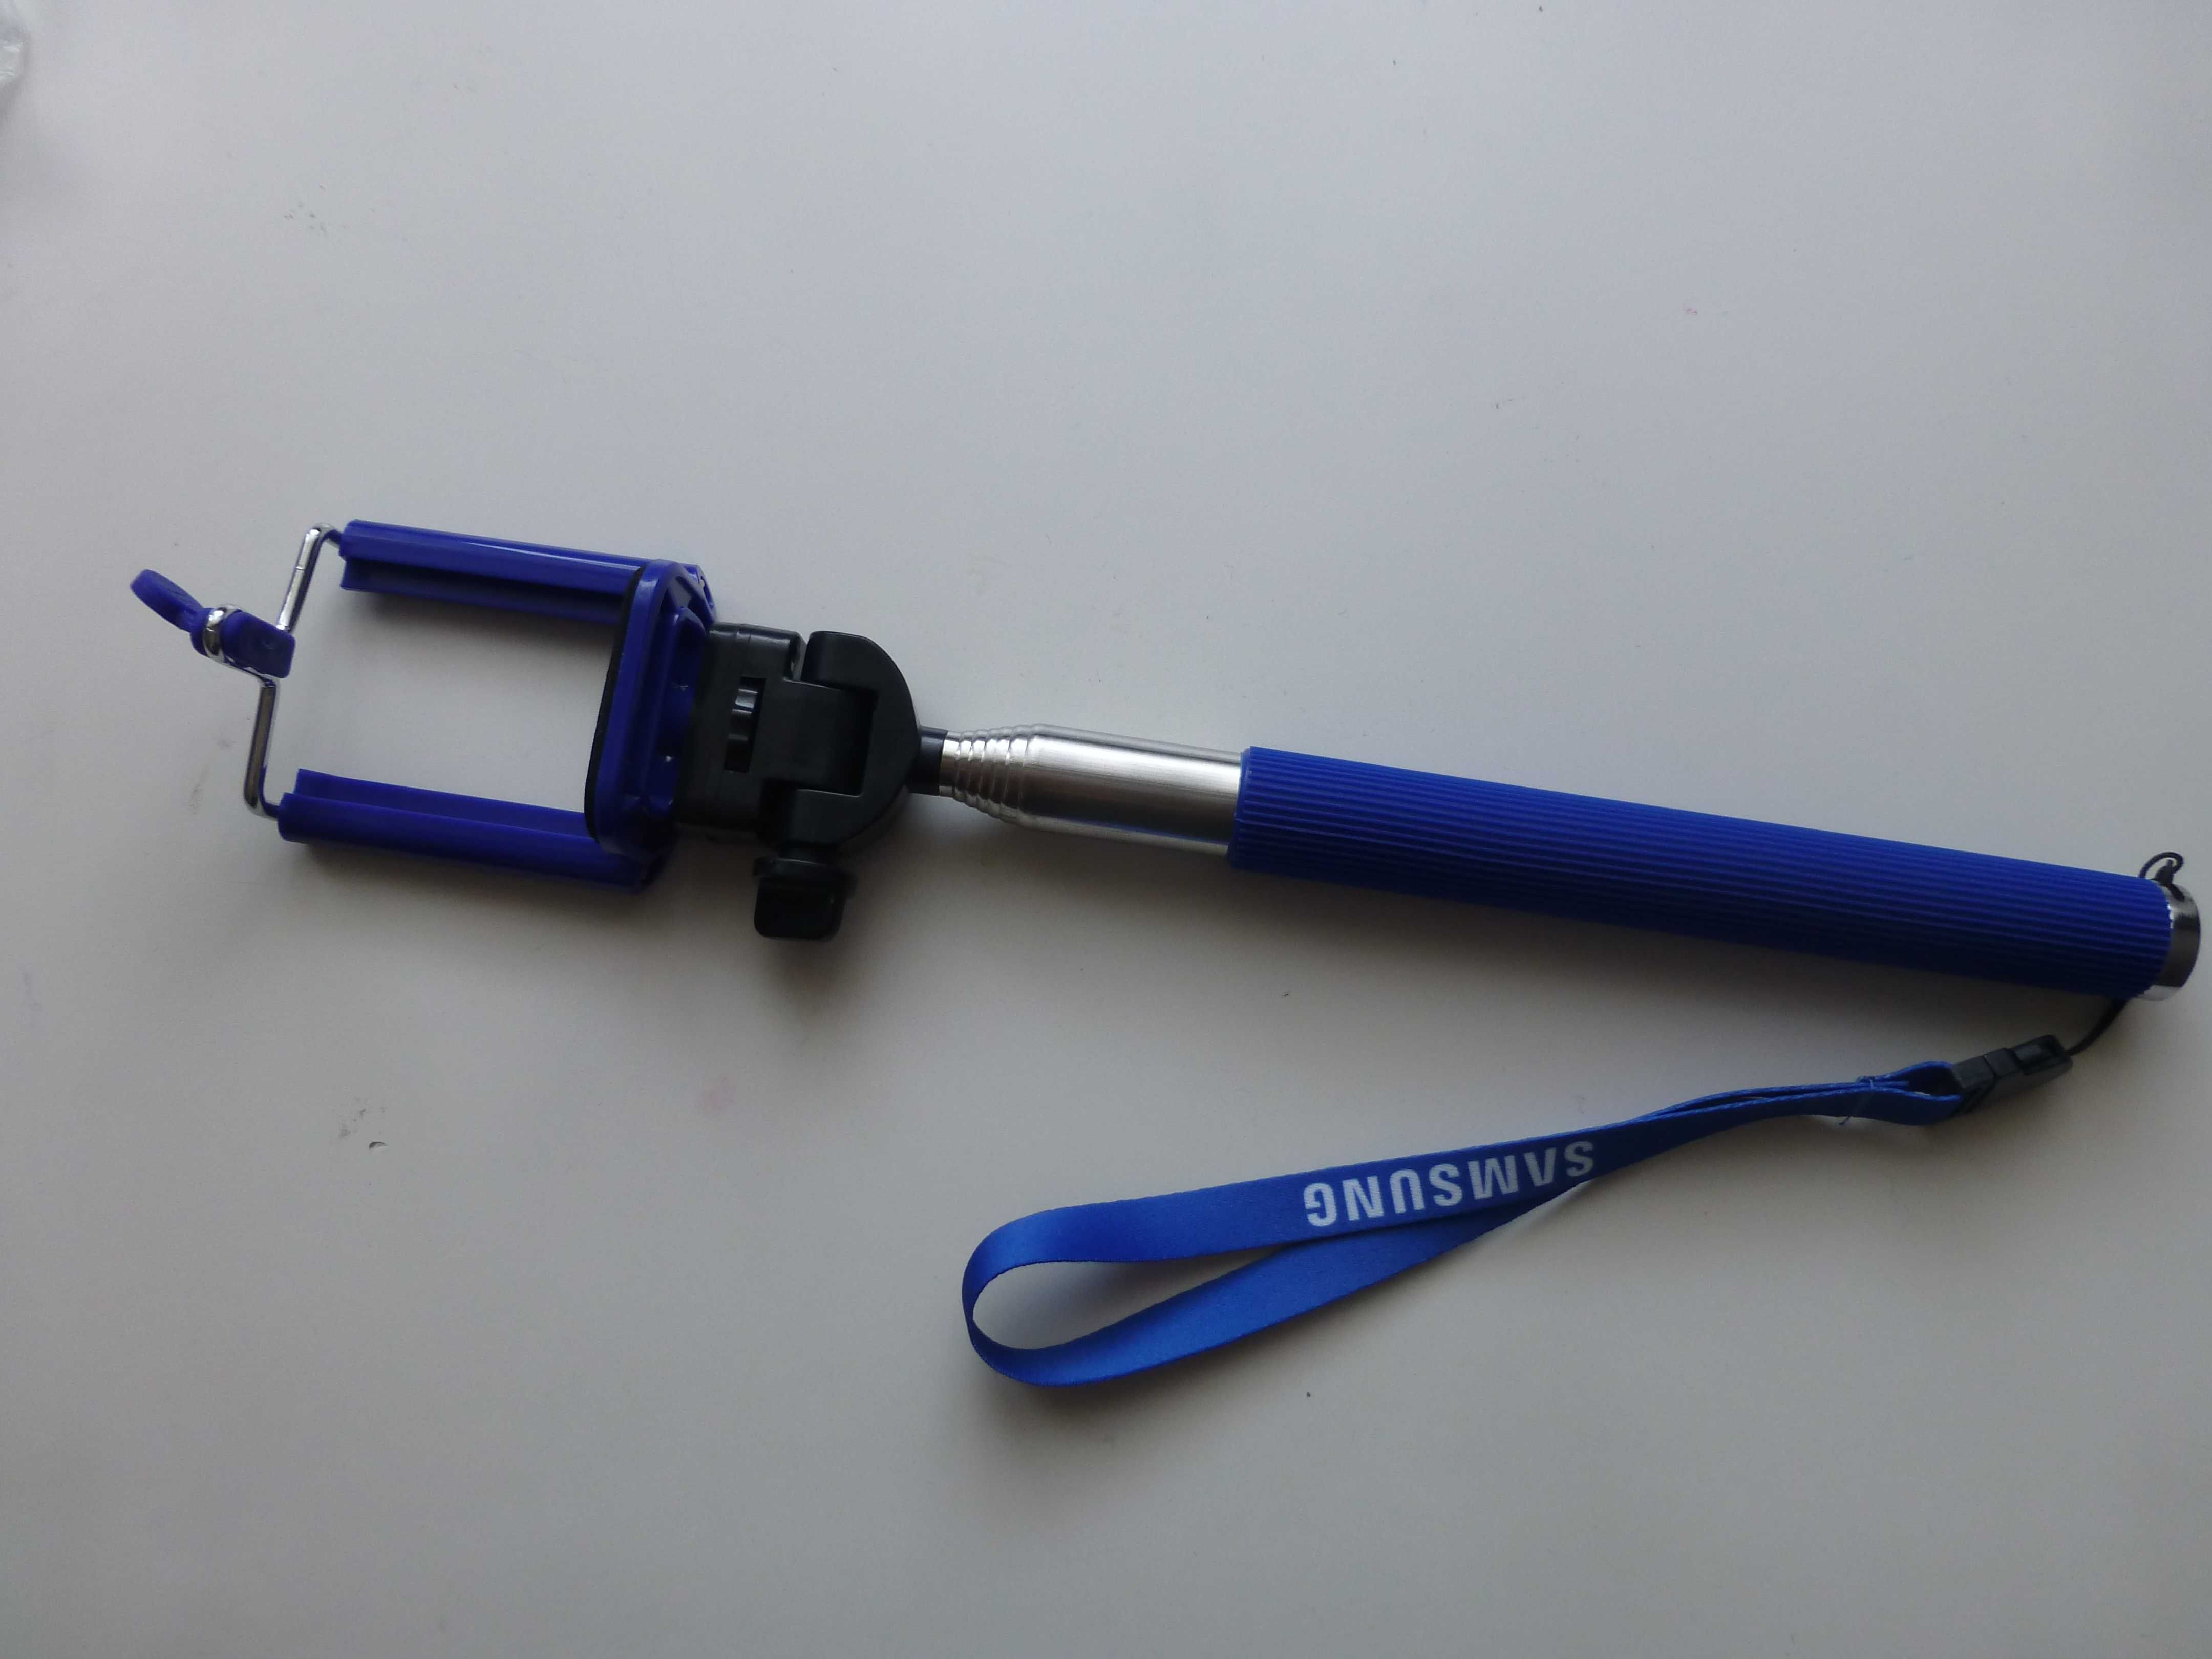 Nowy selfie stick (kijek / uchwyt do selfie) firmy Samsung